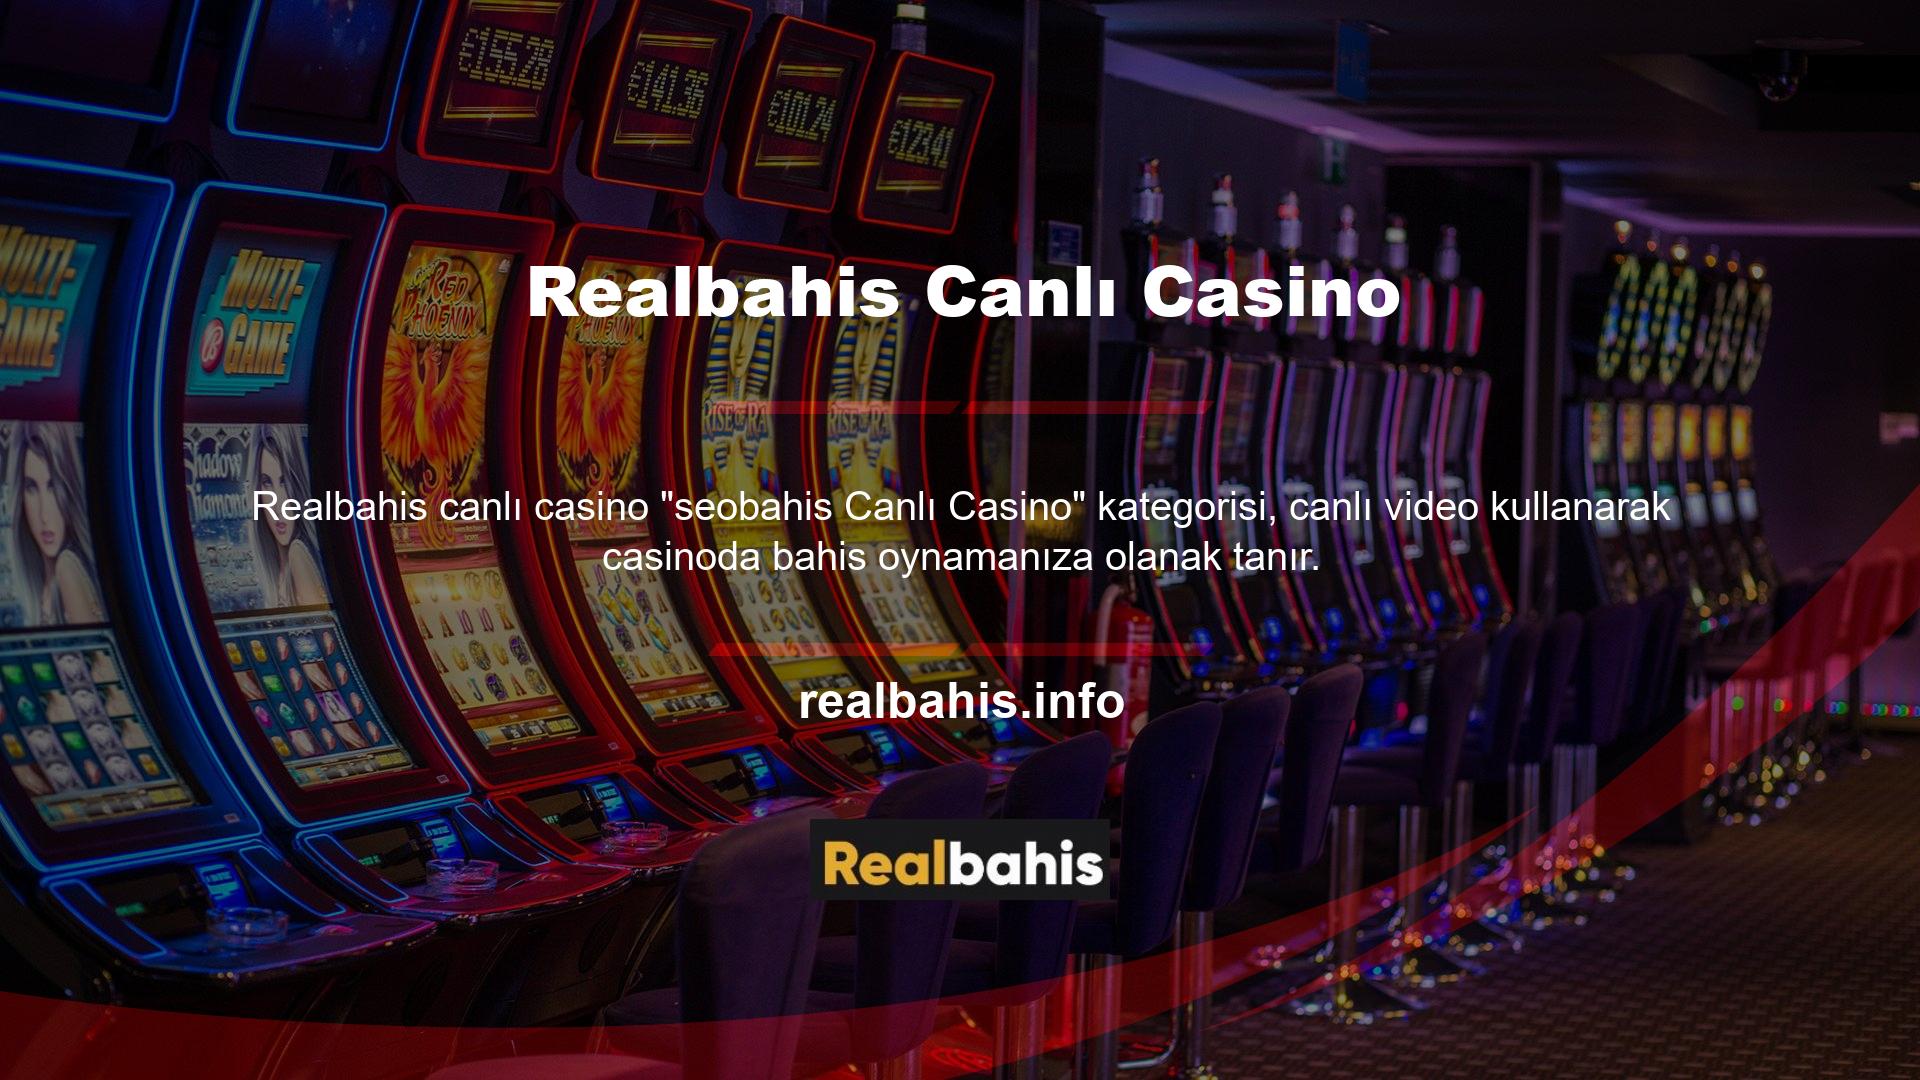 Realbahis ana sayfasına giriş yapıp, kategoriden "Canlı Casino" seçeneğini seçerek canlı maçları izleyebilirsiniz